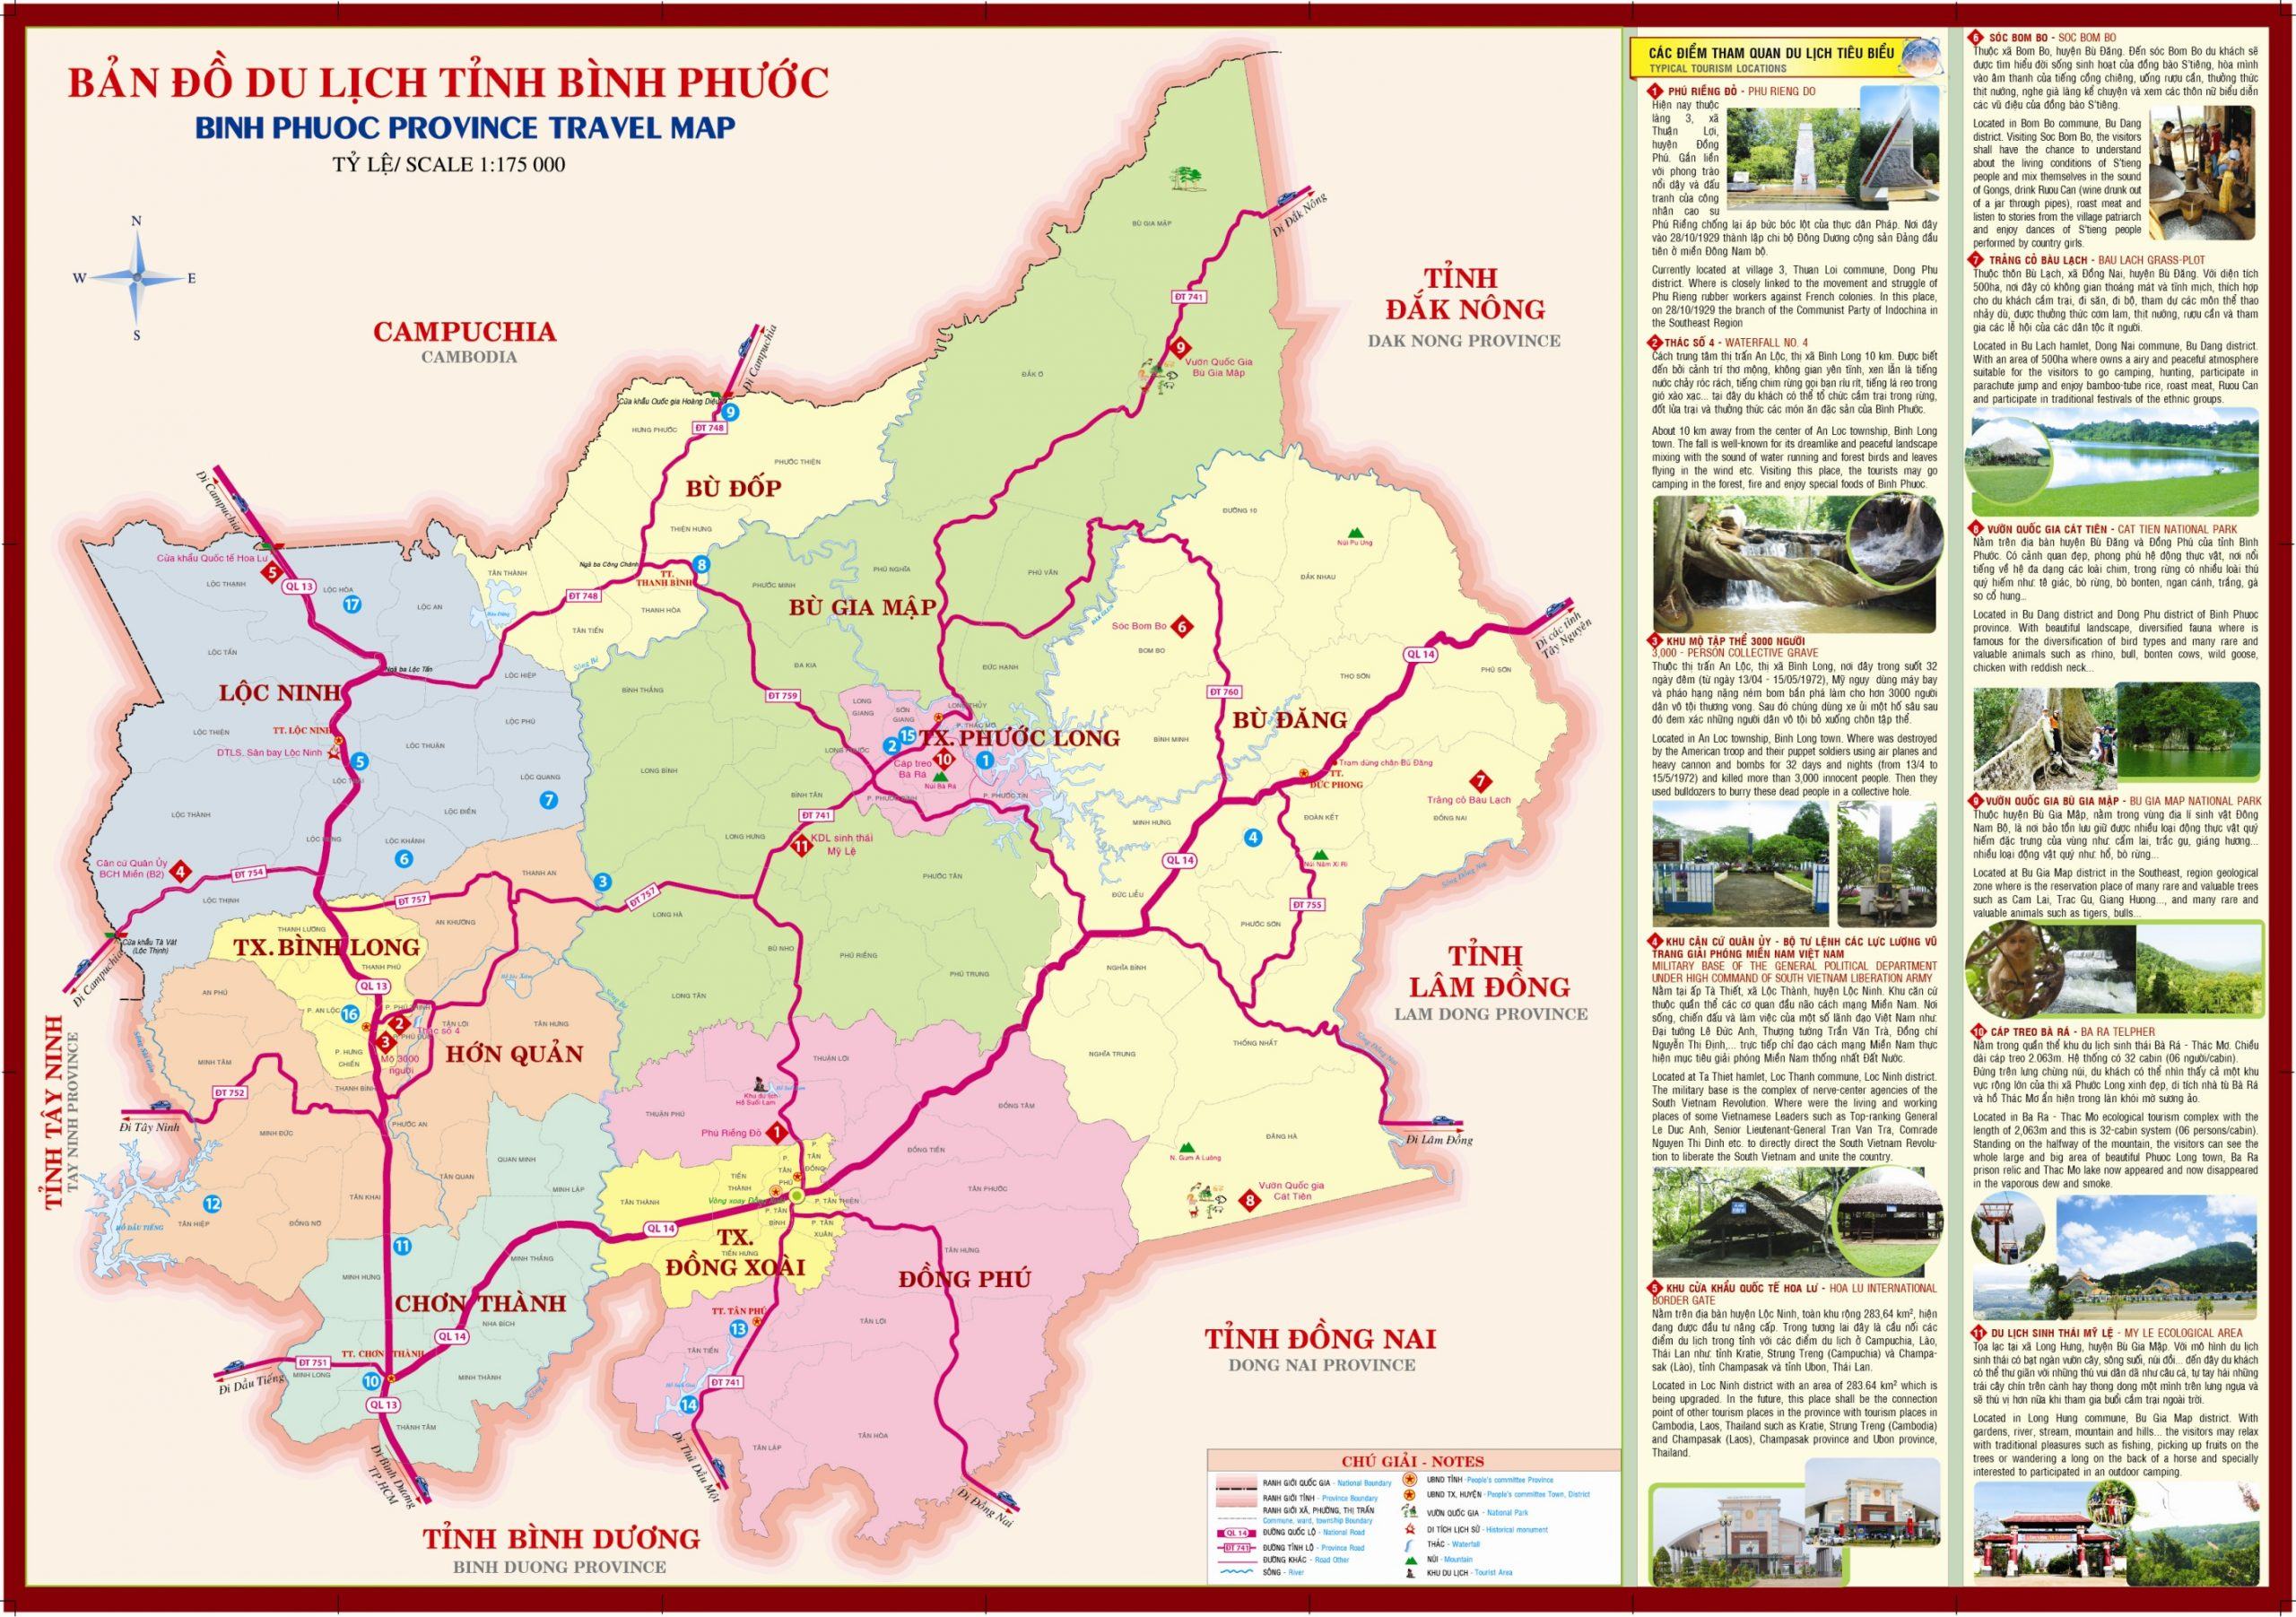 Bản đồ du lịch tỉnh Bình Phước khổ lớn chi tiết nhất